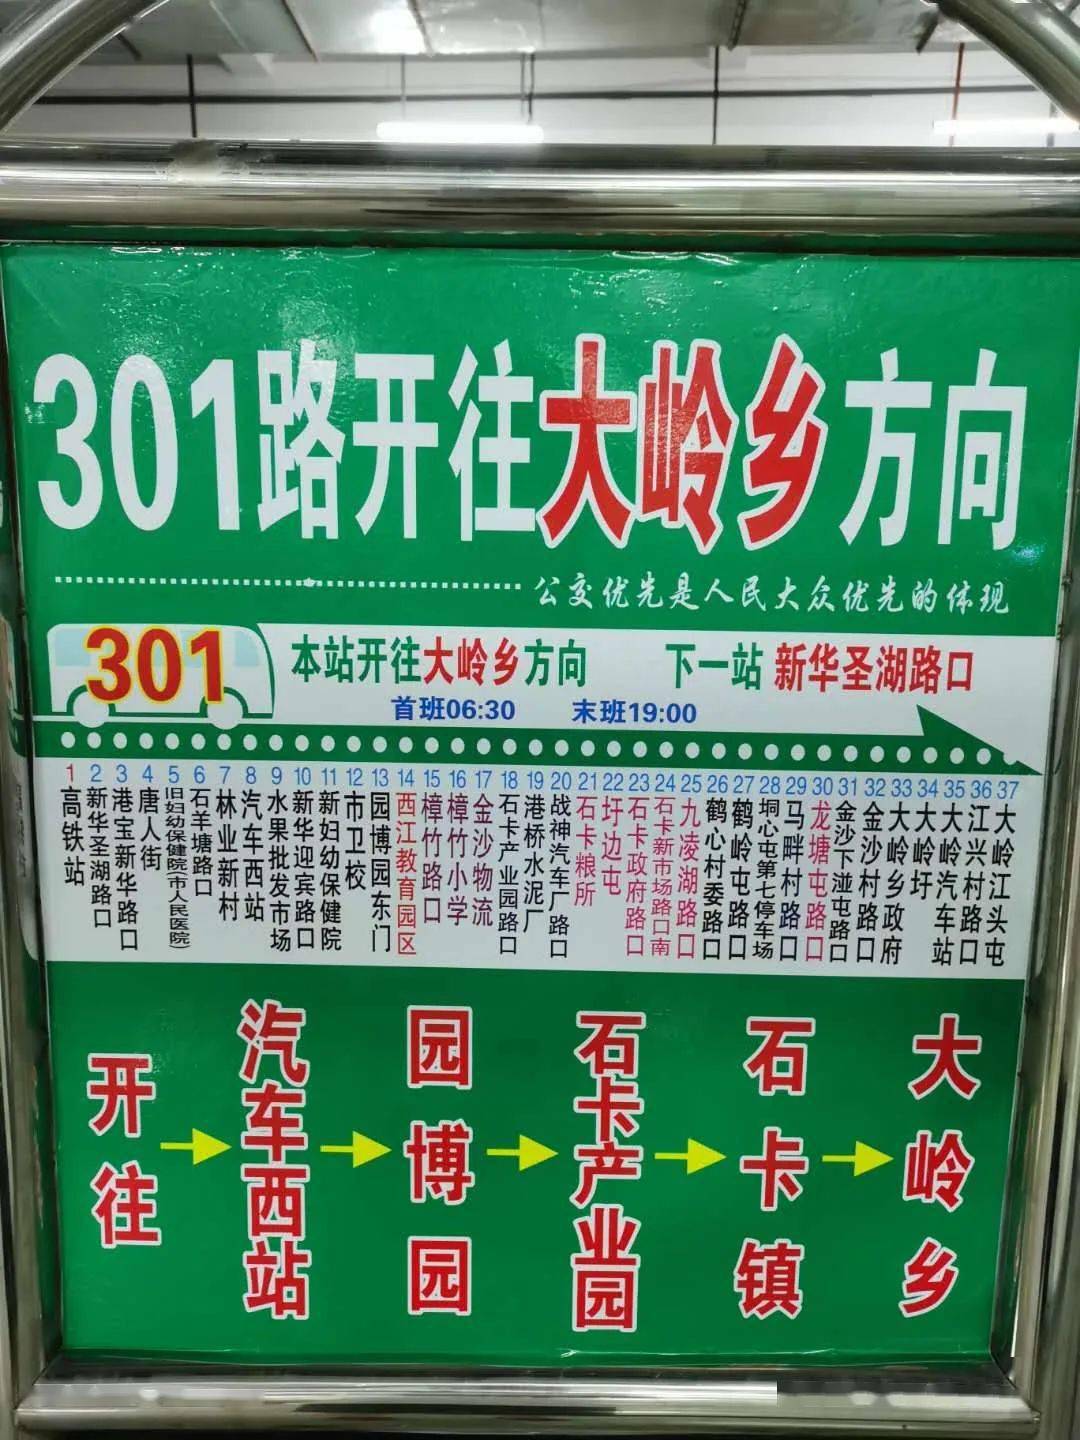 【扩散】贵港市中心城区公交线网优化 三年实施方案公示